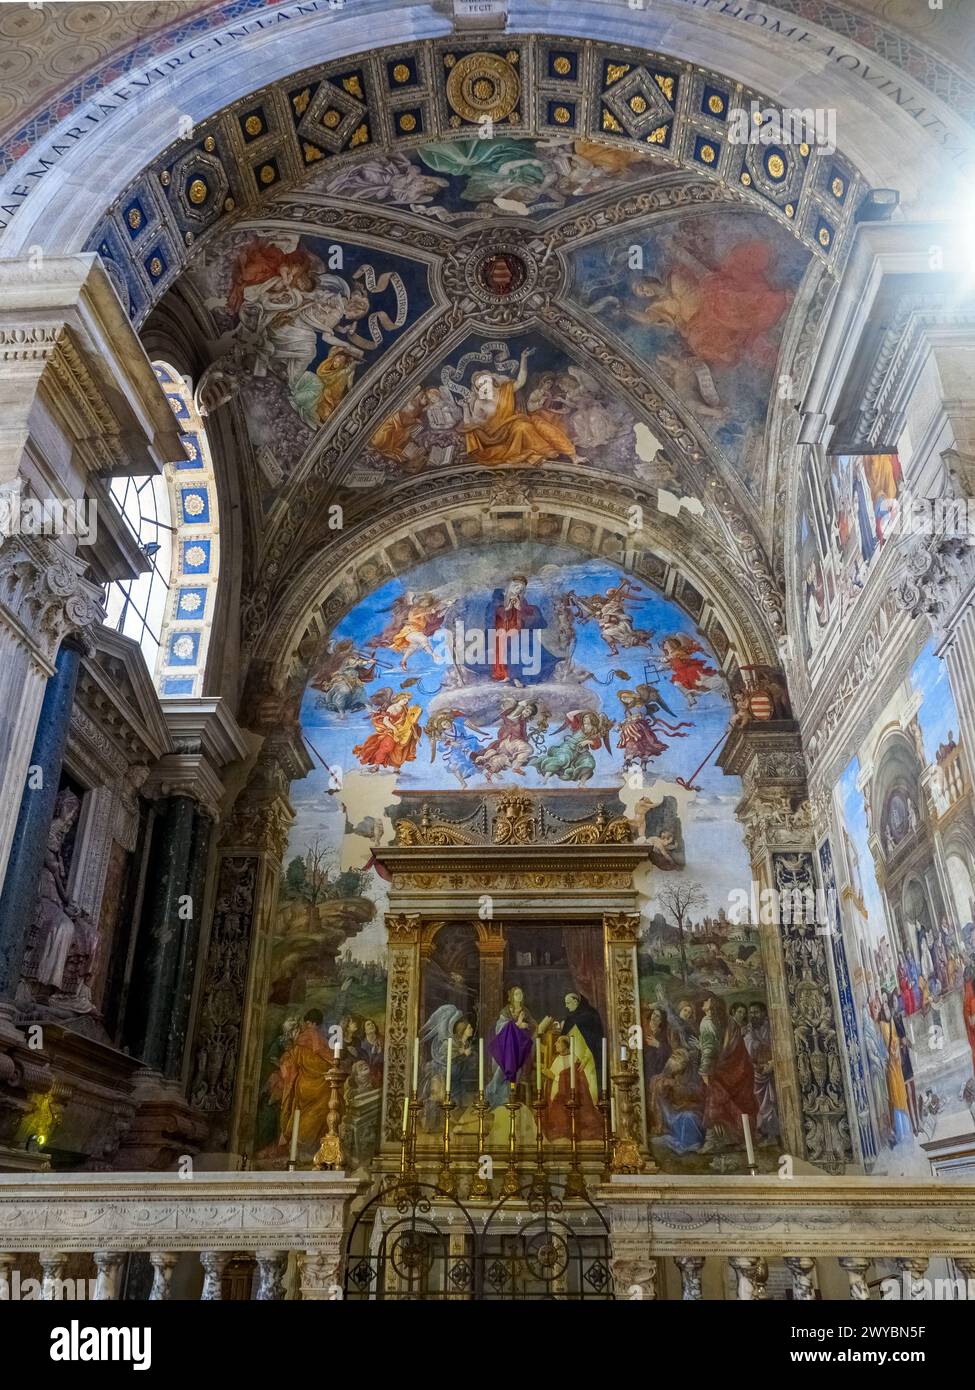 La chapelle de Carafa décorée de fresques dédiée à la préparation Mary et Thomas d'Aquino construit à la fin du XVe siècle - Basilica di Santa Maria sopra Minerva - Rome, Italie Banque D'Images